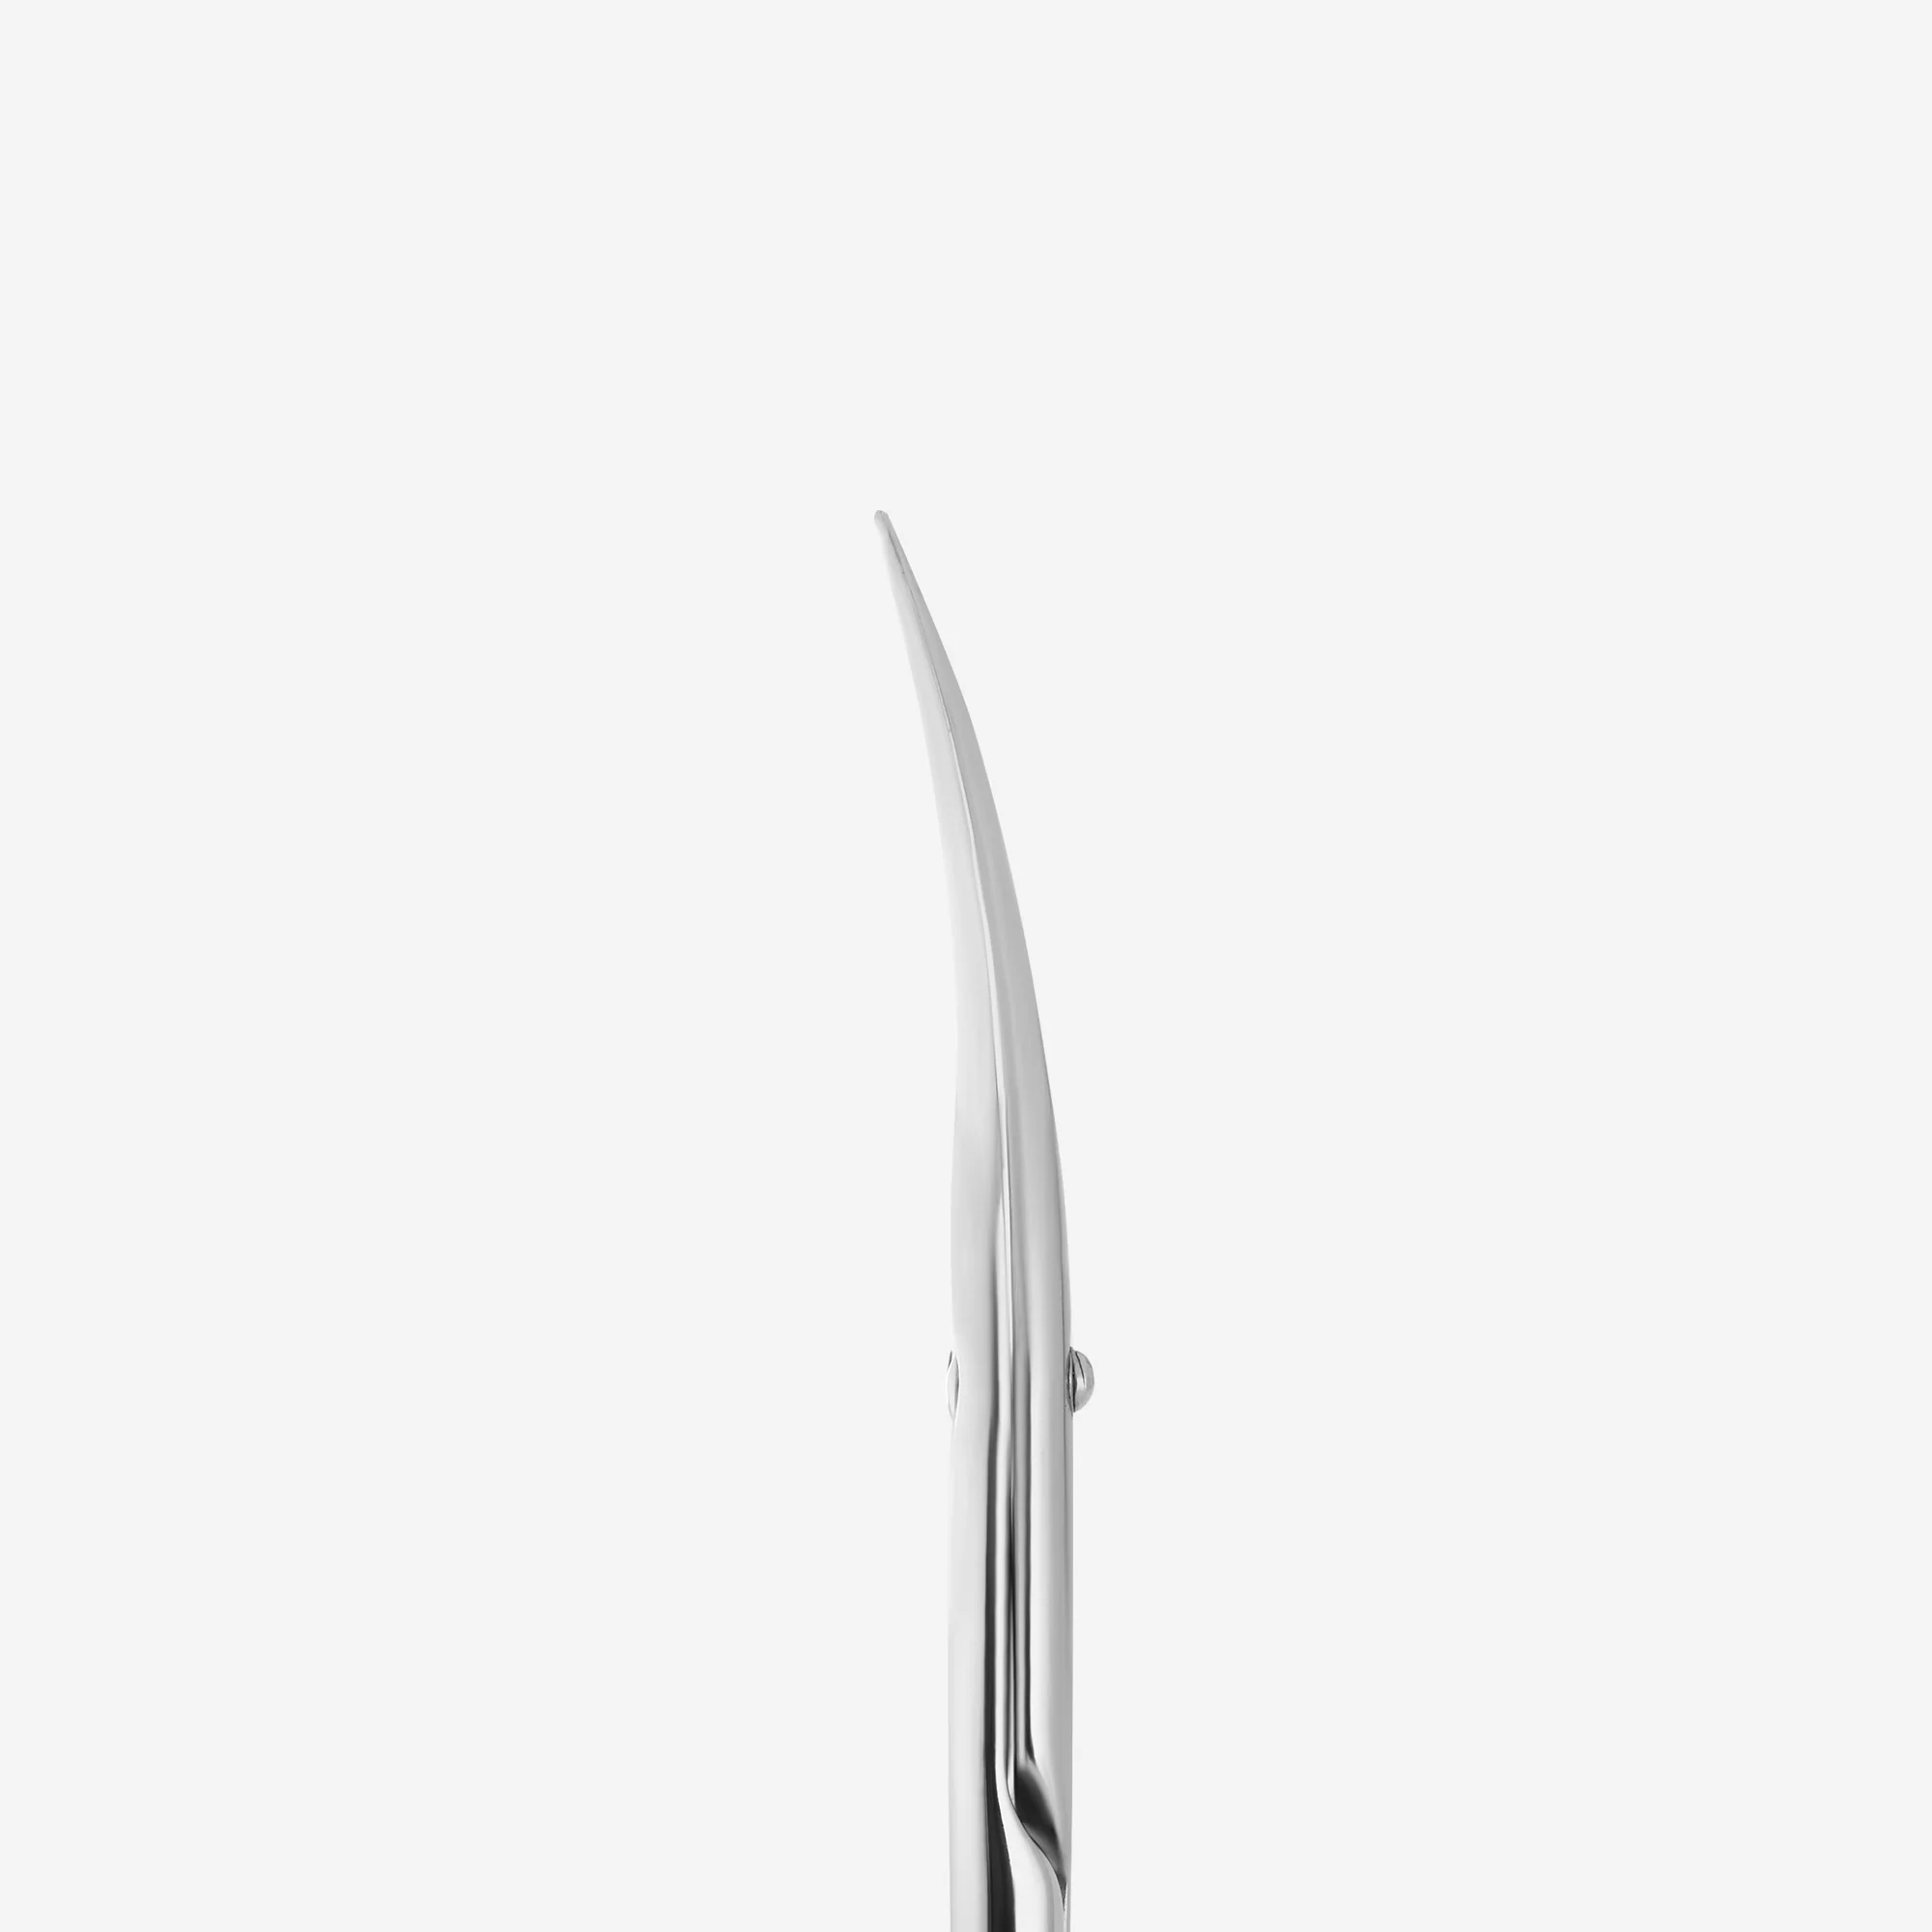 STALEKS PRO Profesionální nůžky na kůžičku EXCLUSIVE SX-20/1 Magnolia, L-102 mm, čepele 21 mm